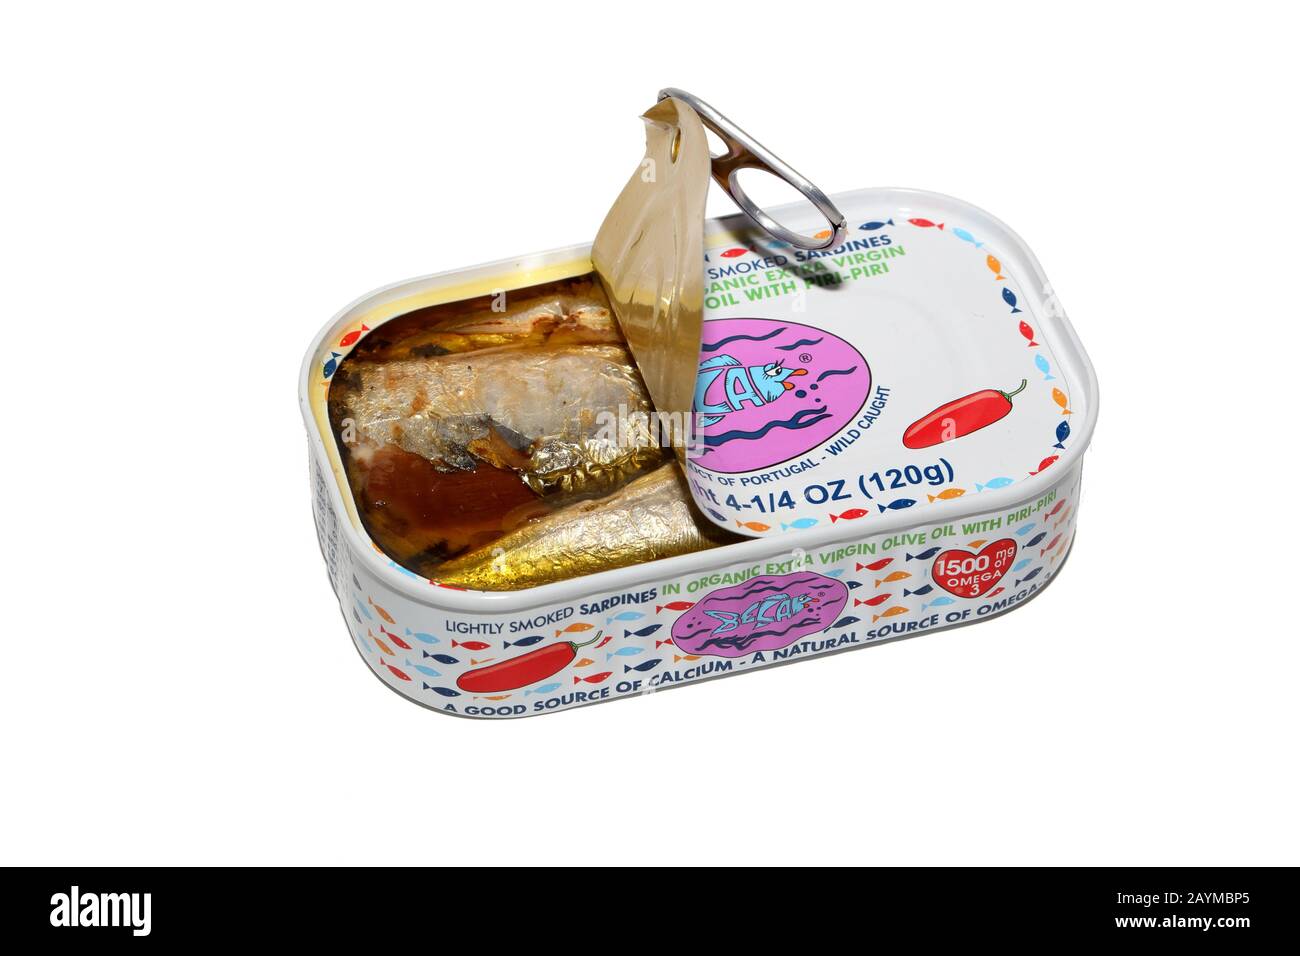 Una lattina aperta del marchio Bela leggermente affumicata sardine in olio d'oliva con piri-piri isolati su sfondo bianco. Immagine ritagliata per uso editoriale. Foto Stock